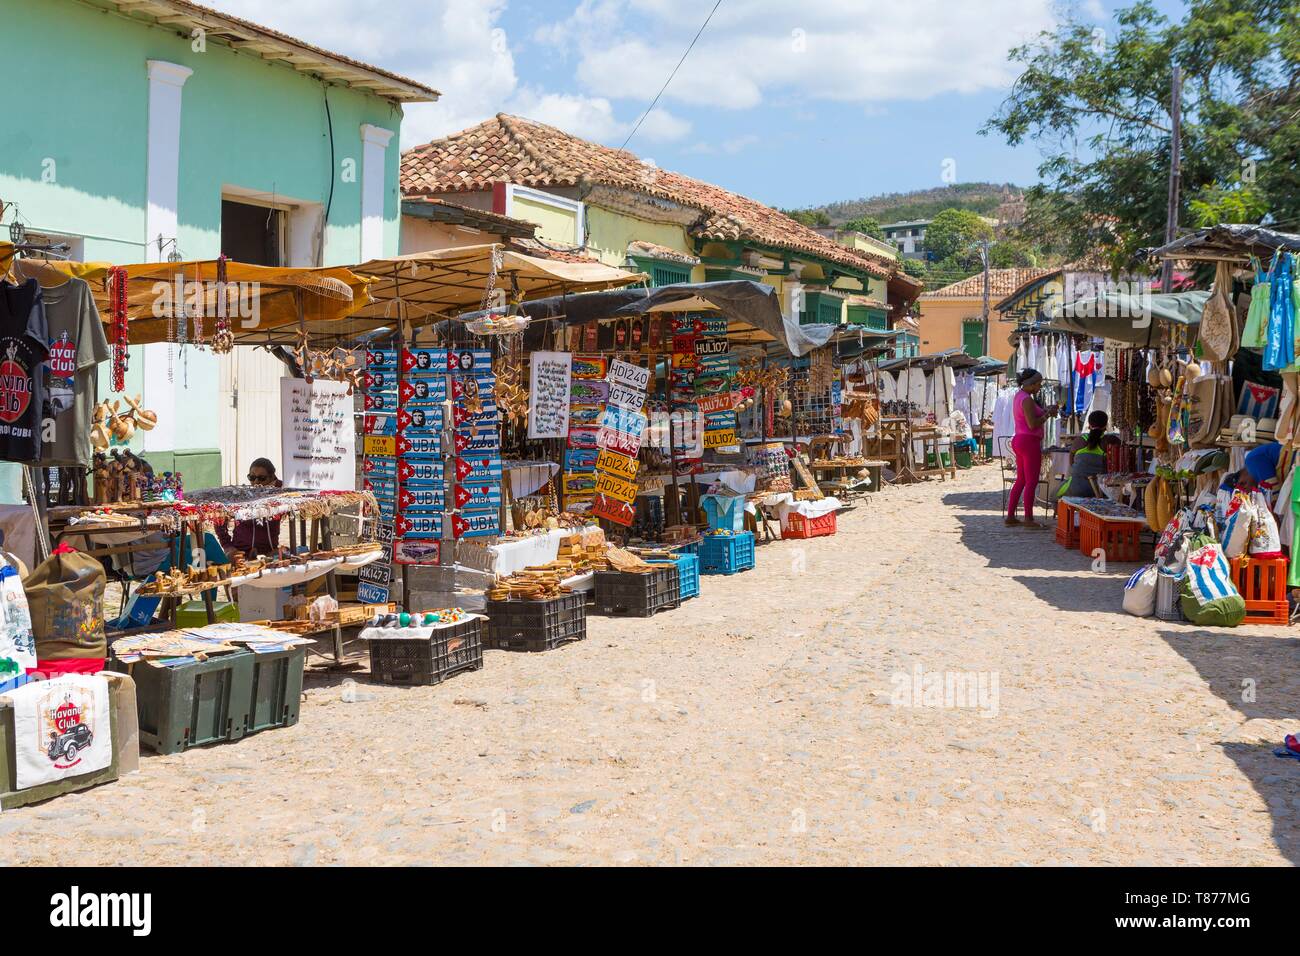 Kuba, Provinz Sancti Spiritus, Trinidad de Cuba UNESCO Weltkulturerbe, der Markt in den Gassen Stockfoto